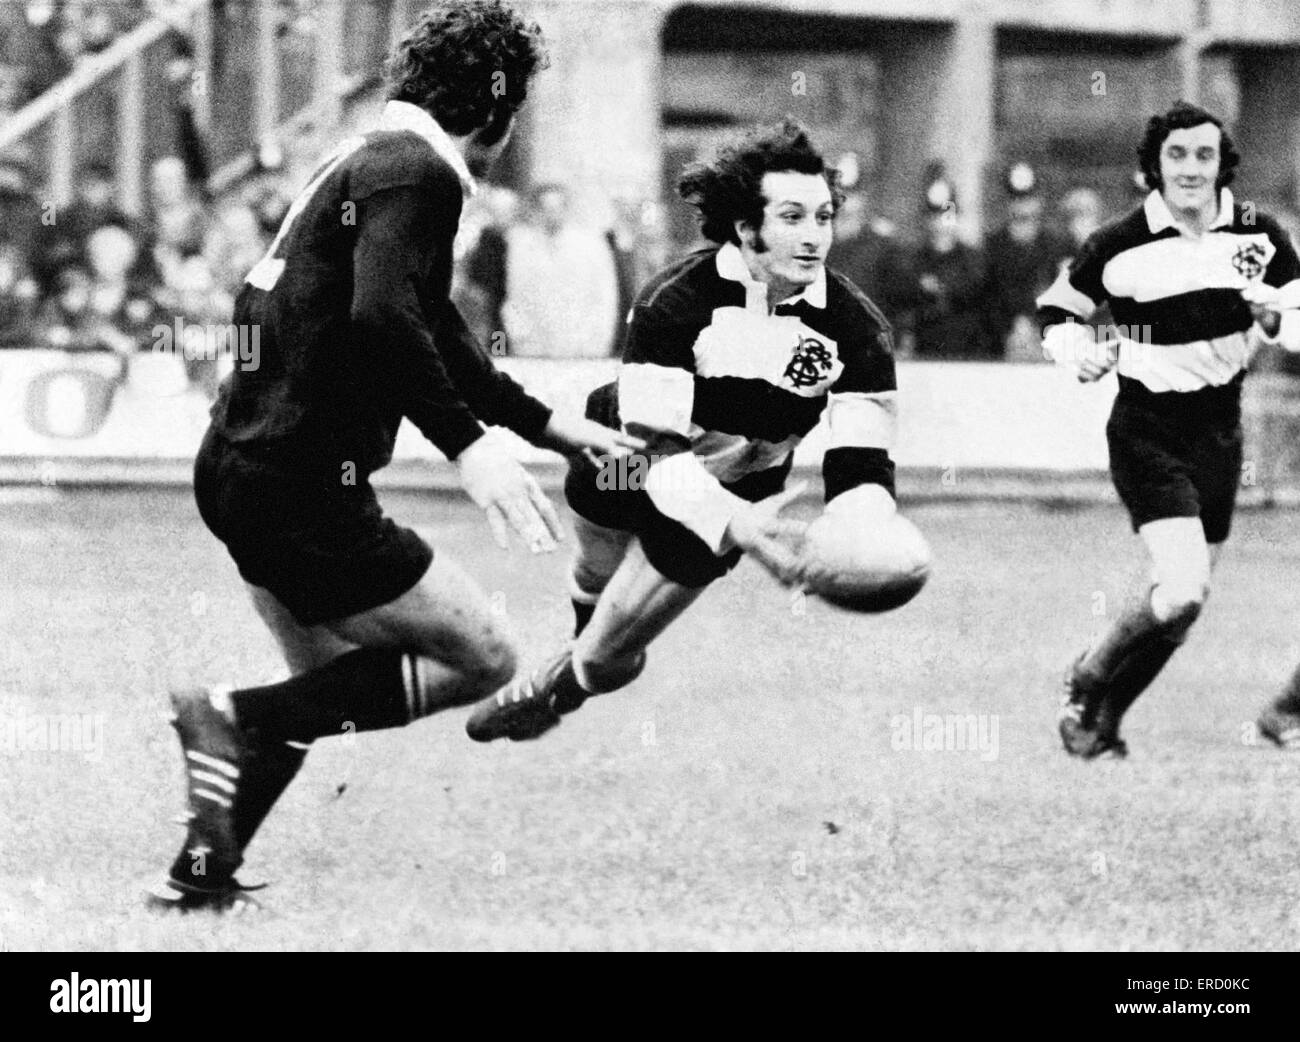 Barbari v Nuova Zelanda, Rugby Union corrispondono a Cardiff Arms Park, 27 gennaio 1973. Punteggio finale 23-11 ai barbari. Nella foto: Gareth Edwards getta fuori un pass, Phil Bennett raffigurato in background. Foto Stock